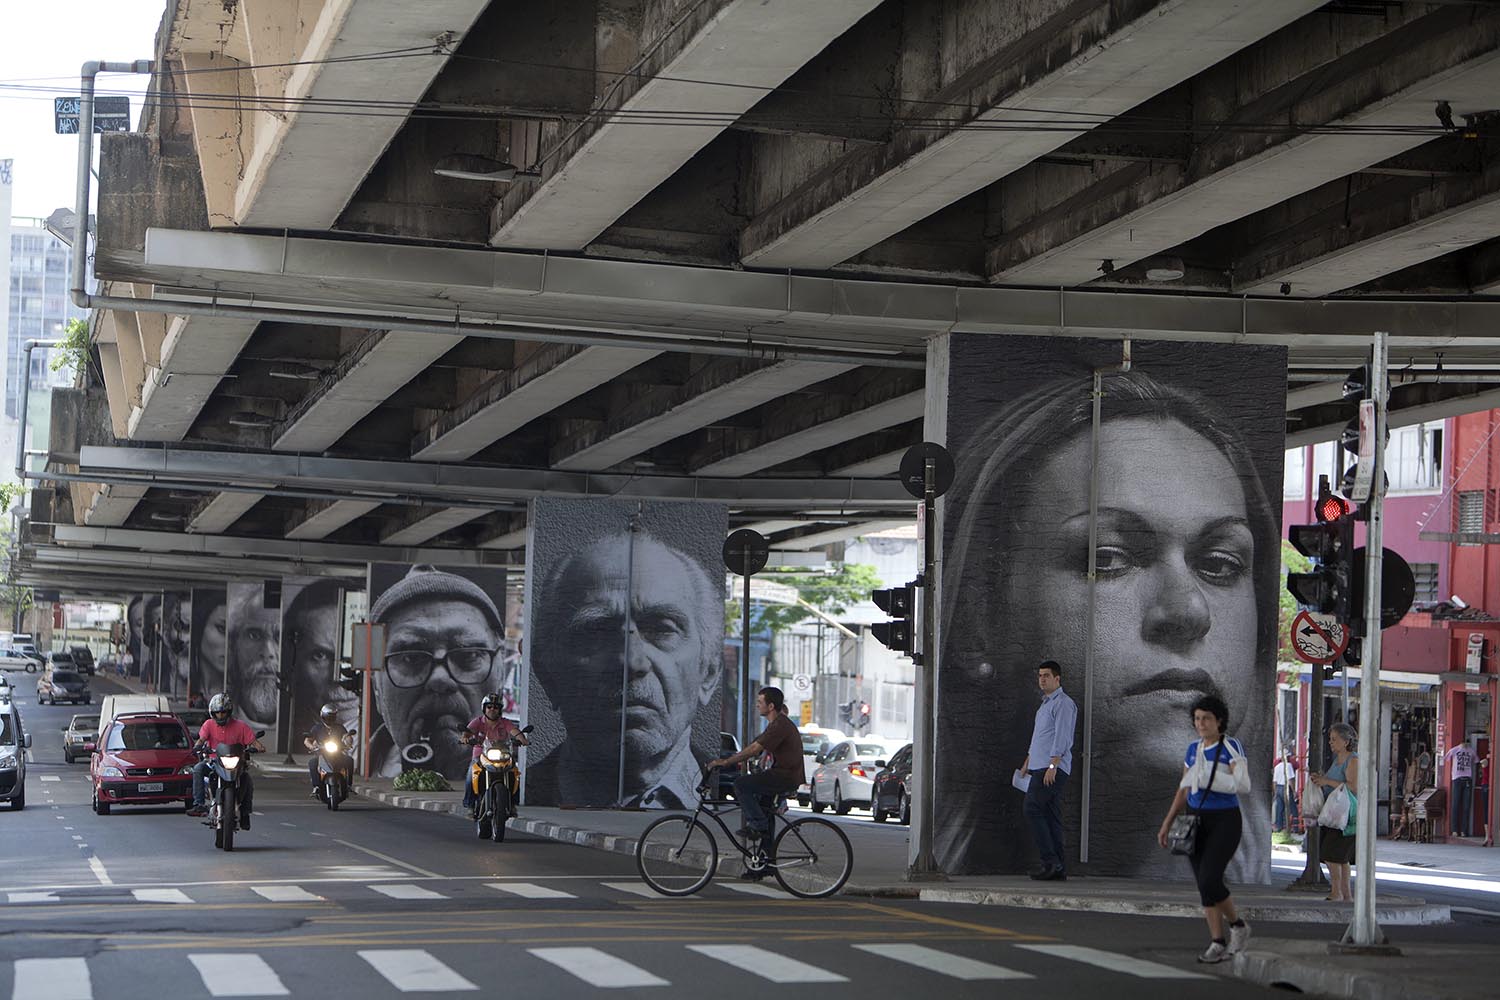 La artista Raquel Brust presenta el proyecto ‘Giganto’ en el viaducto São Paulo